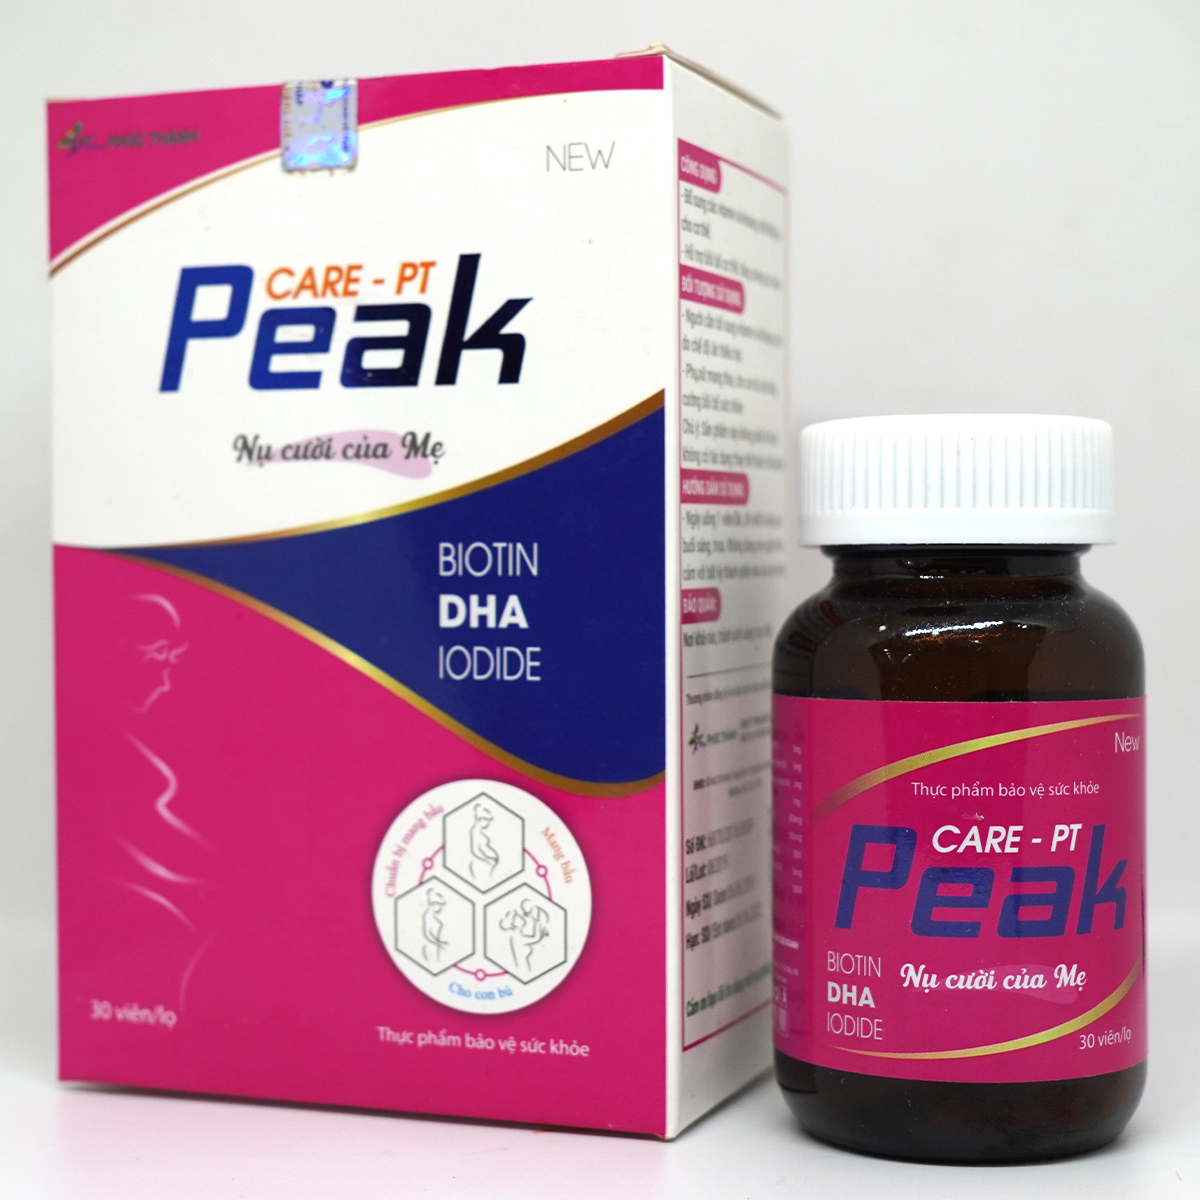 CARE- PT Peak- Cung cấp dưỡng chất quan trọng, cần thiết cho mẹ và thai nhi